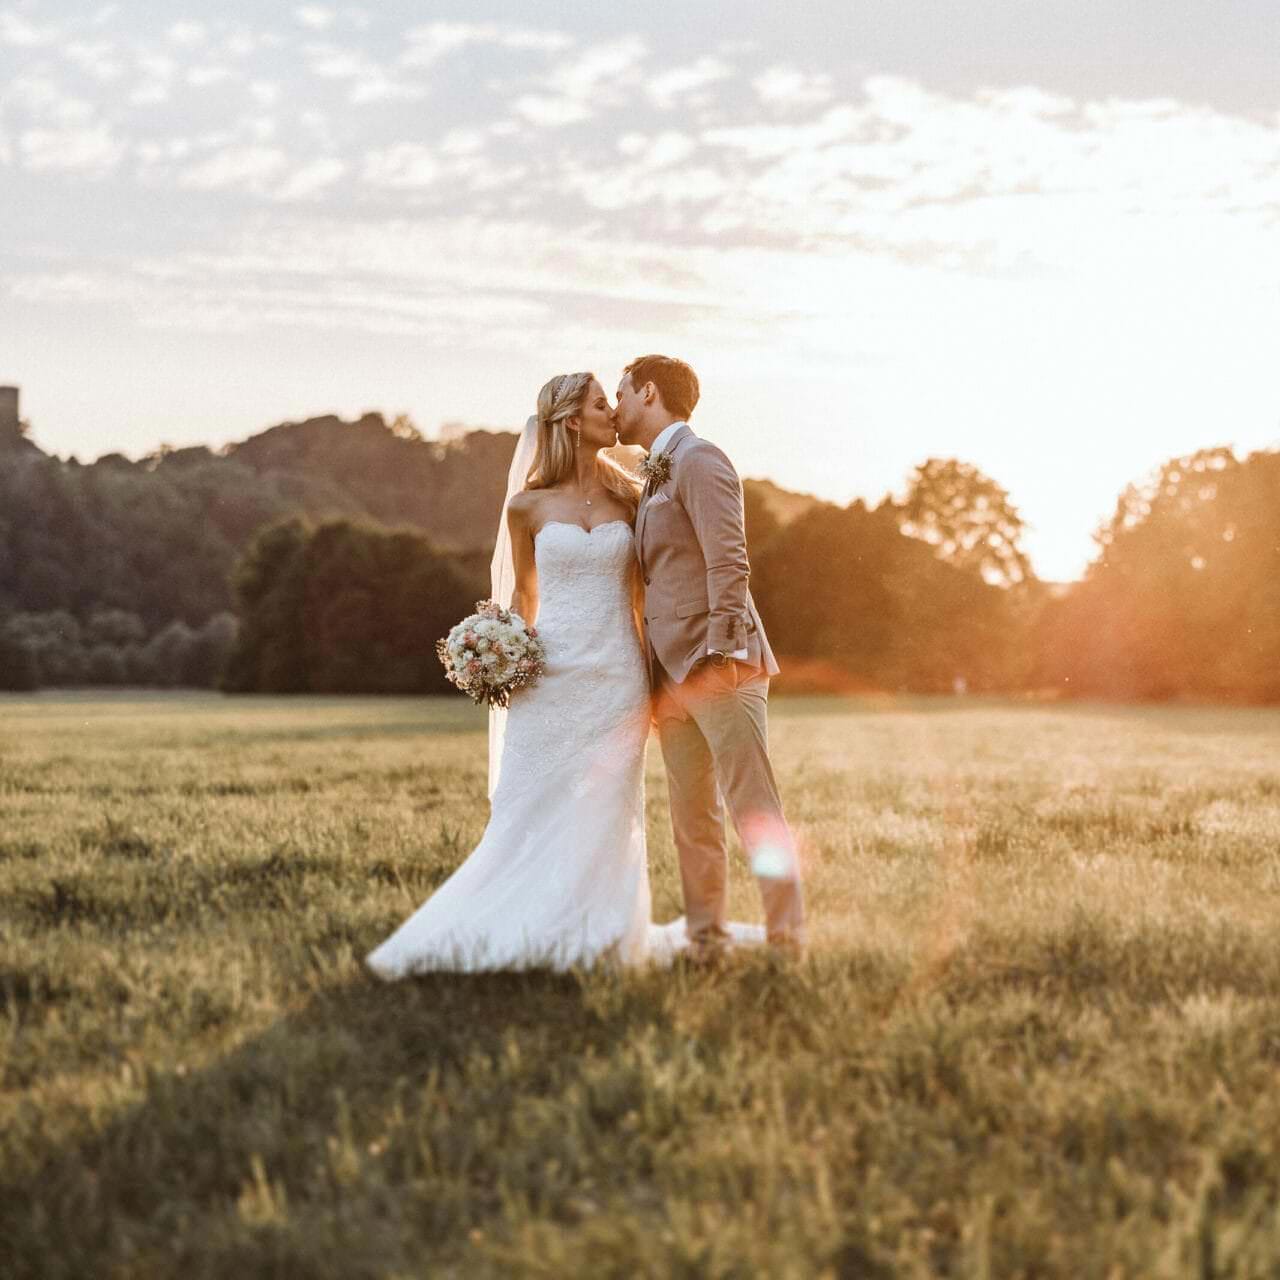 Hochzeitsfotograf Marl Hochzeit Heiraten Hochzeitsfotos - Hochzeitspaar küsst sich auf einer Wiese bei Sonnenuntergang. Bräutigam hat seine linke Hand in der Hosentasche. Die Braut hält ihren Blumenstrauß in der rechten Hand fest. Im Hintergrund ist Wald zu erkennen